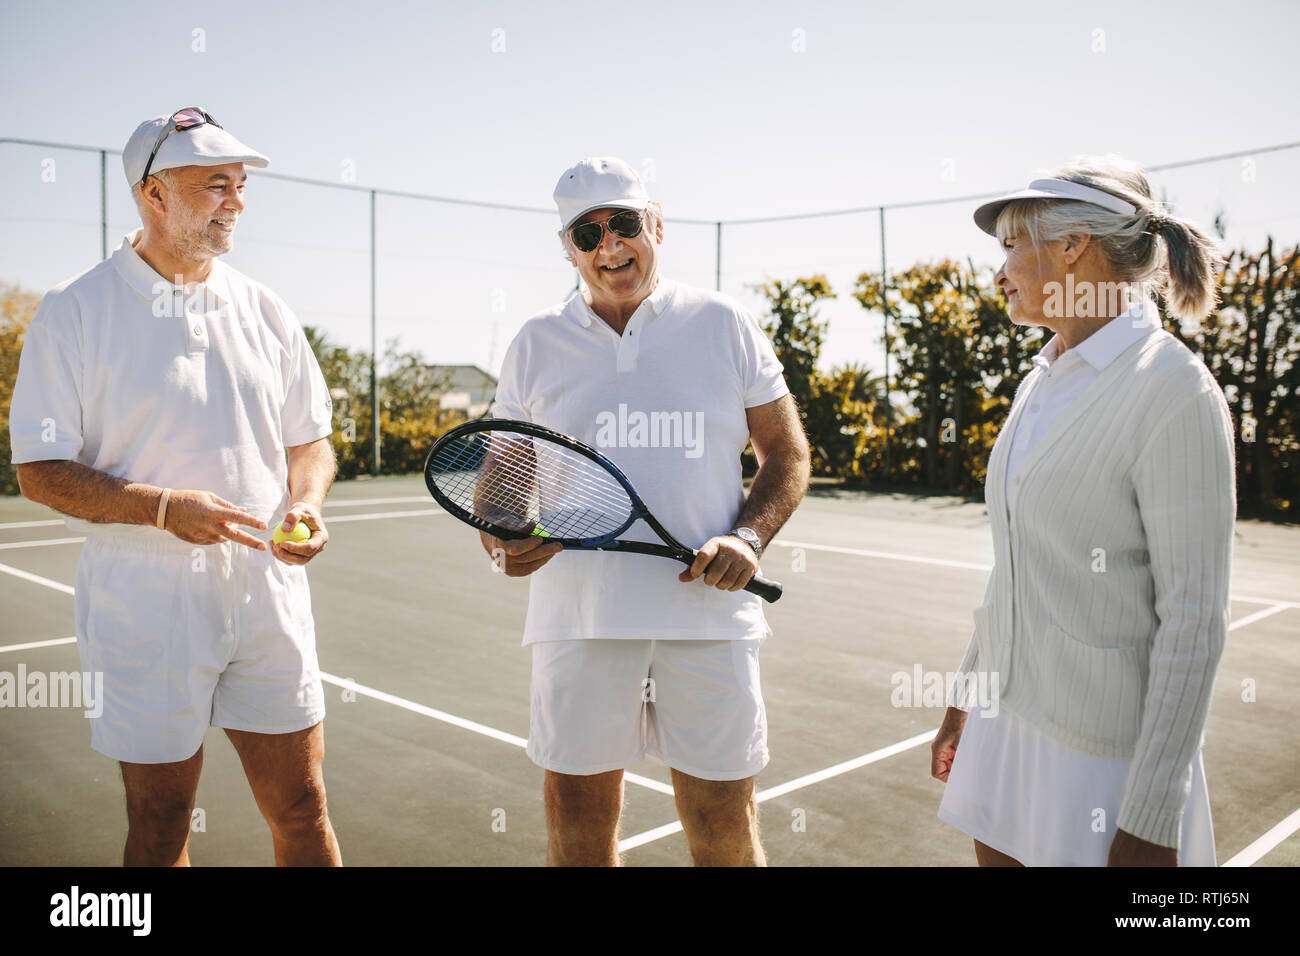 Freundliche Männer im Tennis tragen im Gespräch mit einer älteren Frau, die auf einem Tennisplatz. Lächelnd alten Mann, der mit seinen Spielkameraden Holding einen Tennisschläger. Stockfoto